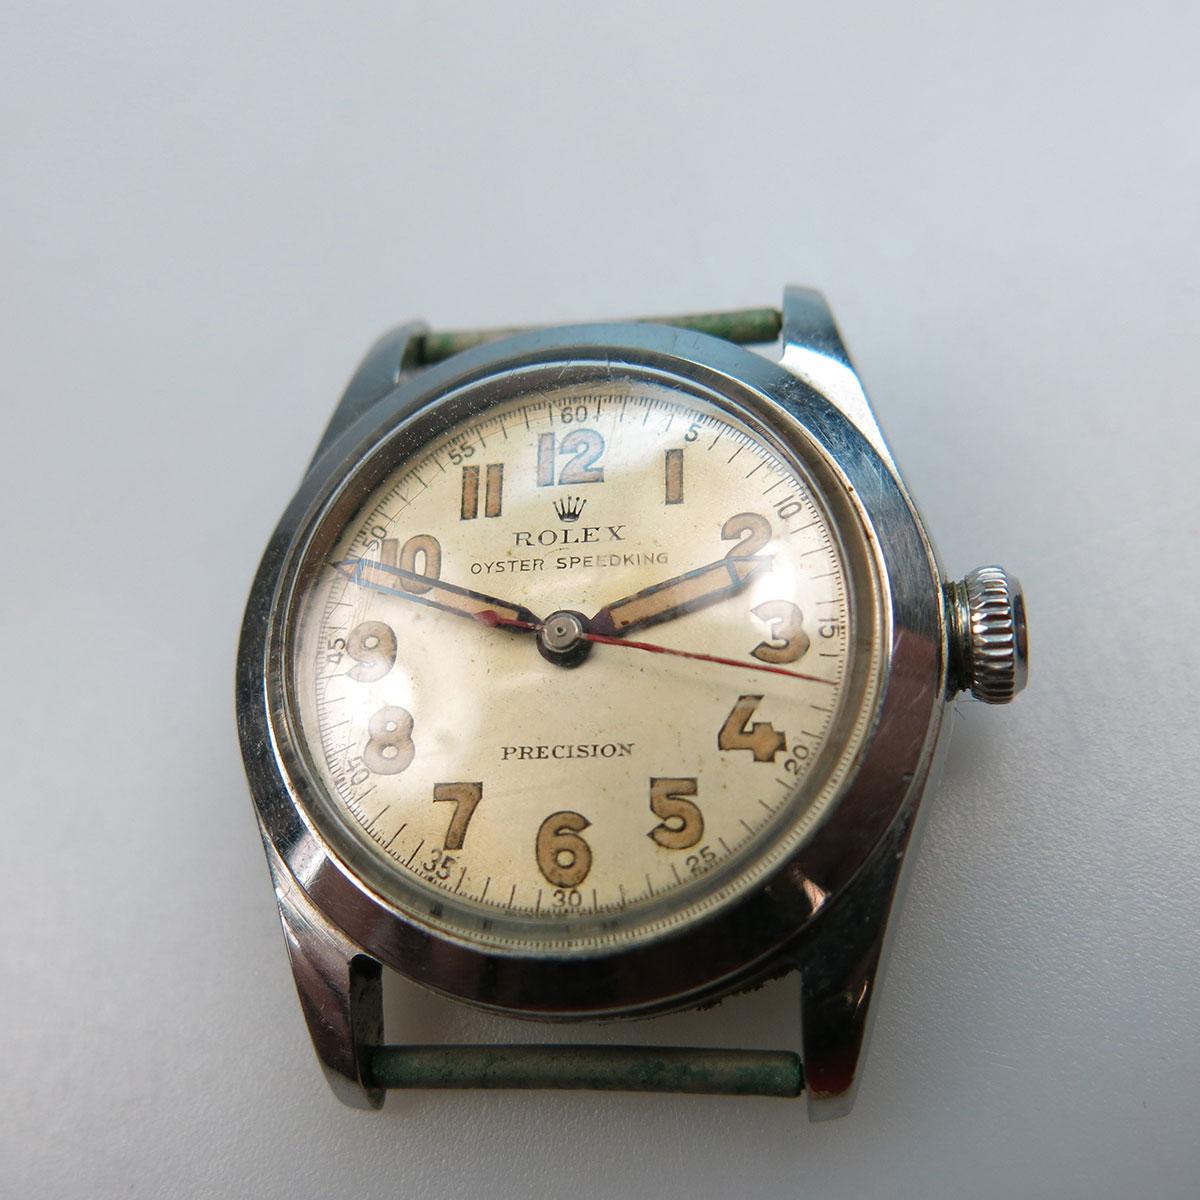 Rolex Oyster Speedking Wristwatch